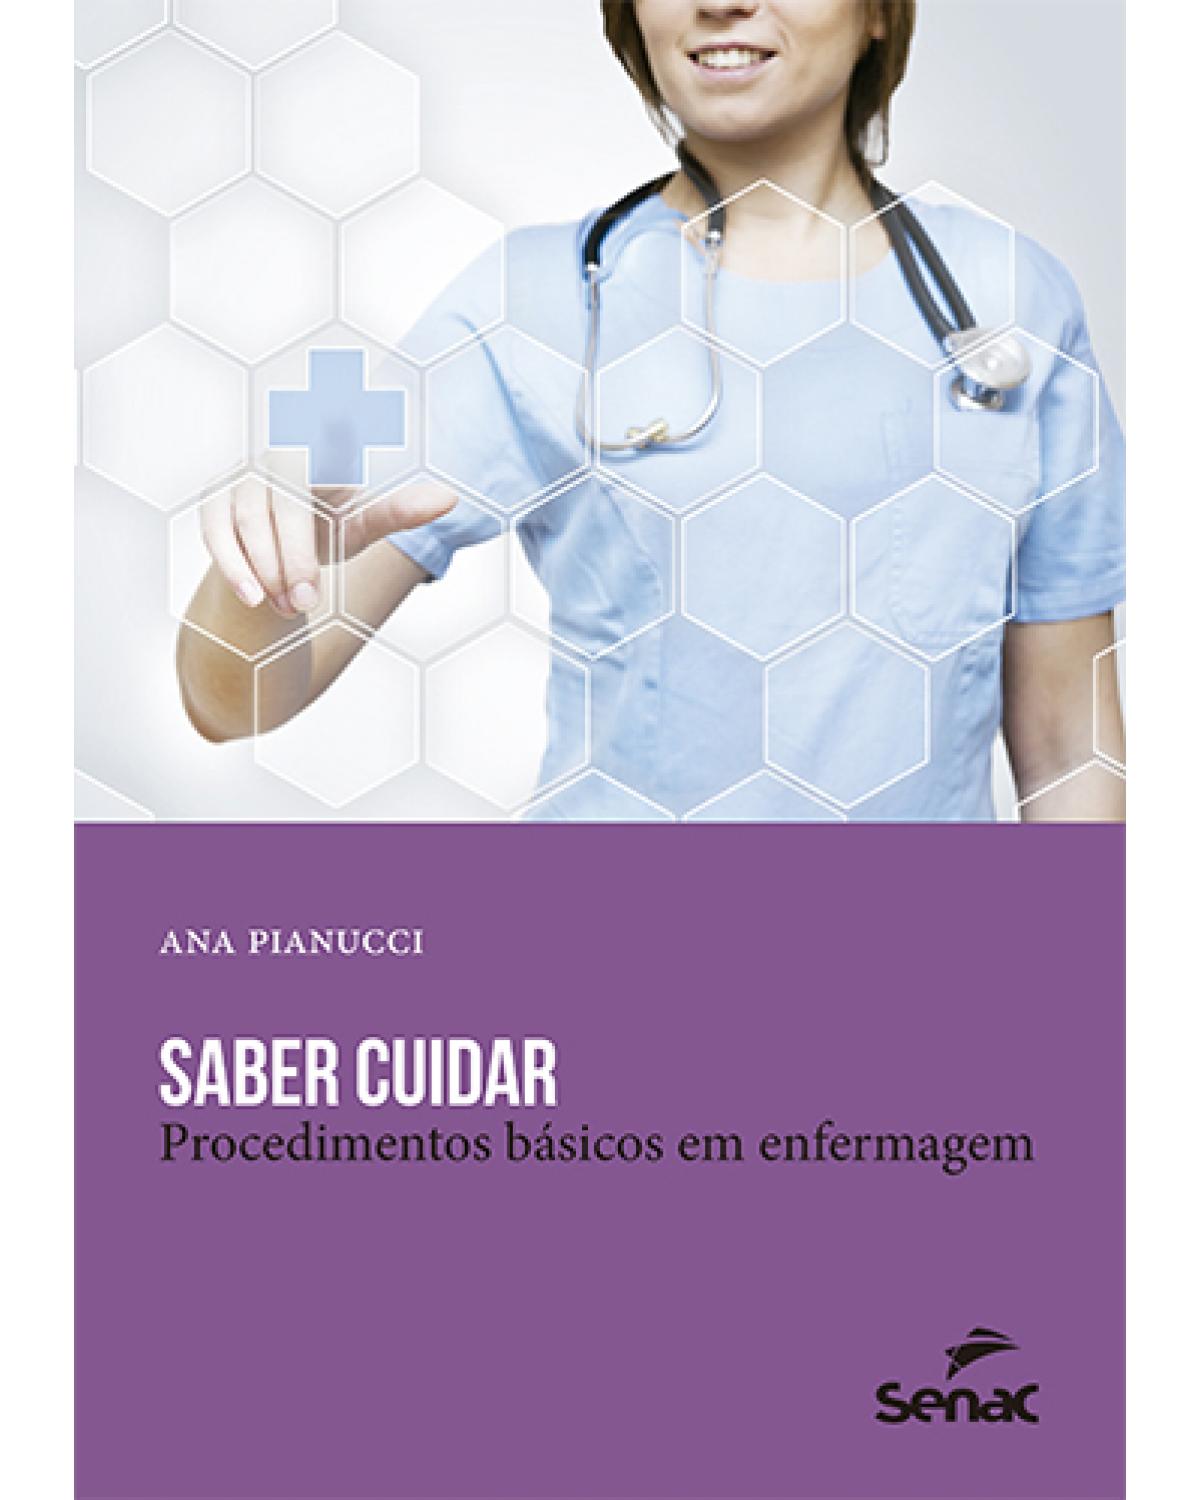 Saber cuidar: Procedimentos básicos em enfermagem - 17ª Edição